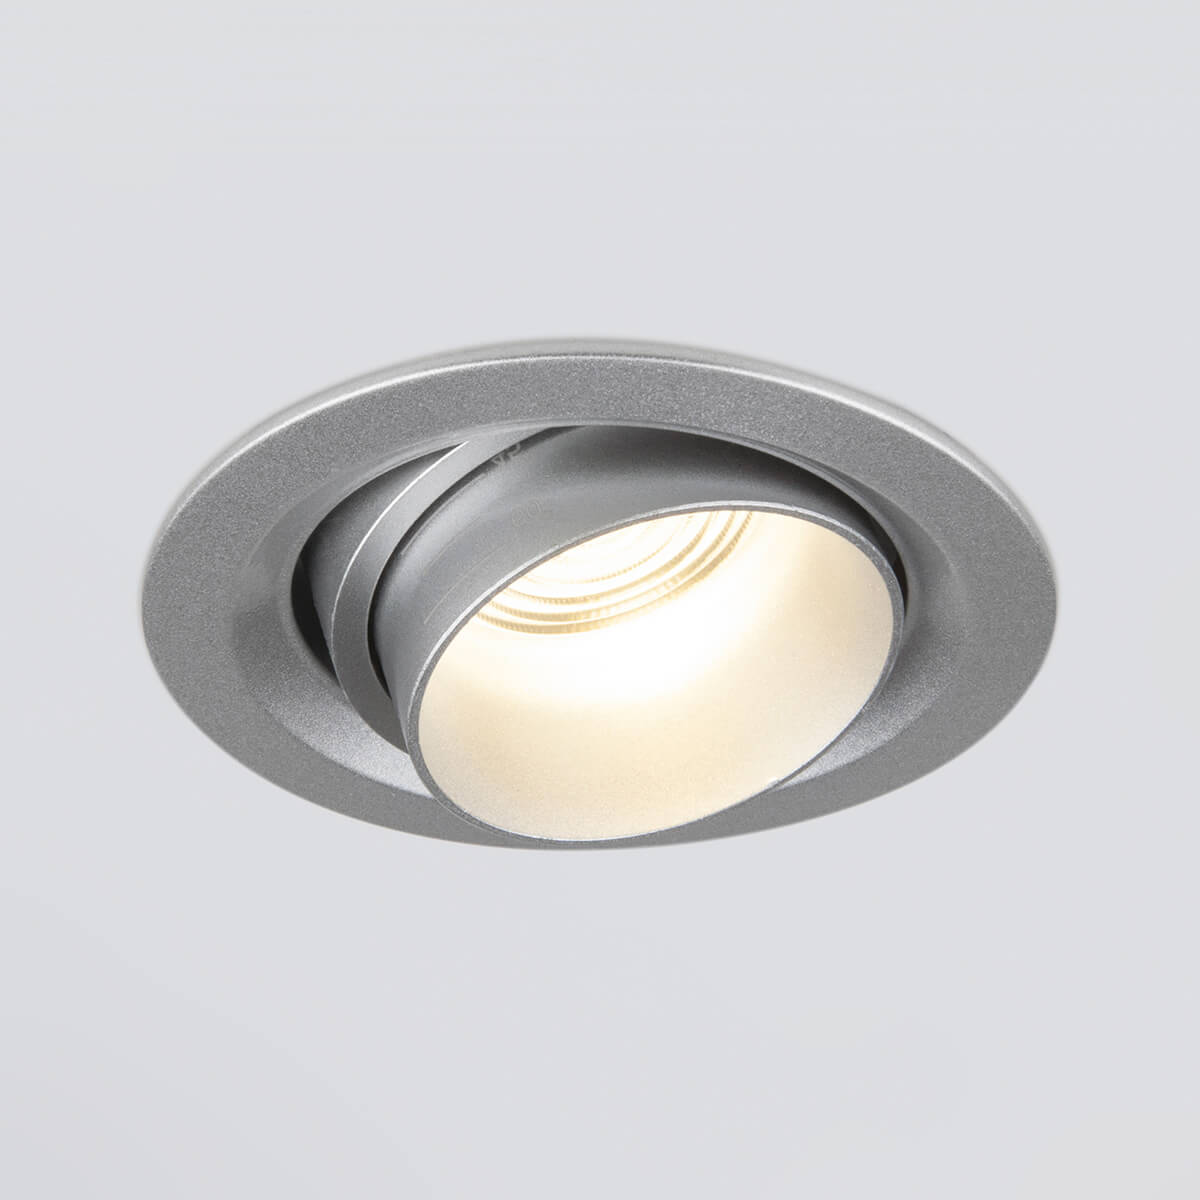 Встраиваемый светодиодный светильник Elektrostandard 9920 LED 15W 4200K серебро 4690389162909